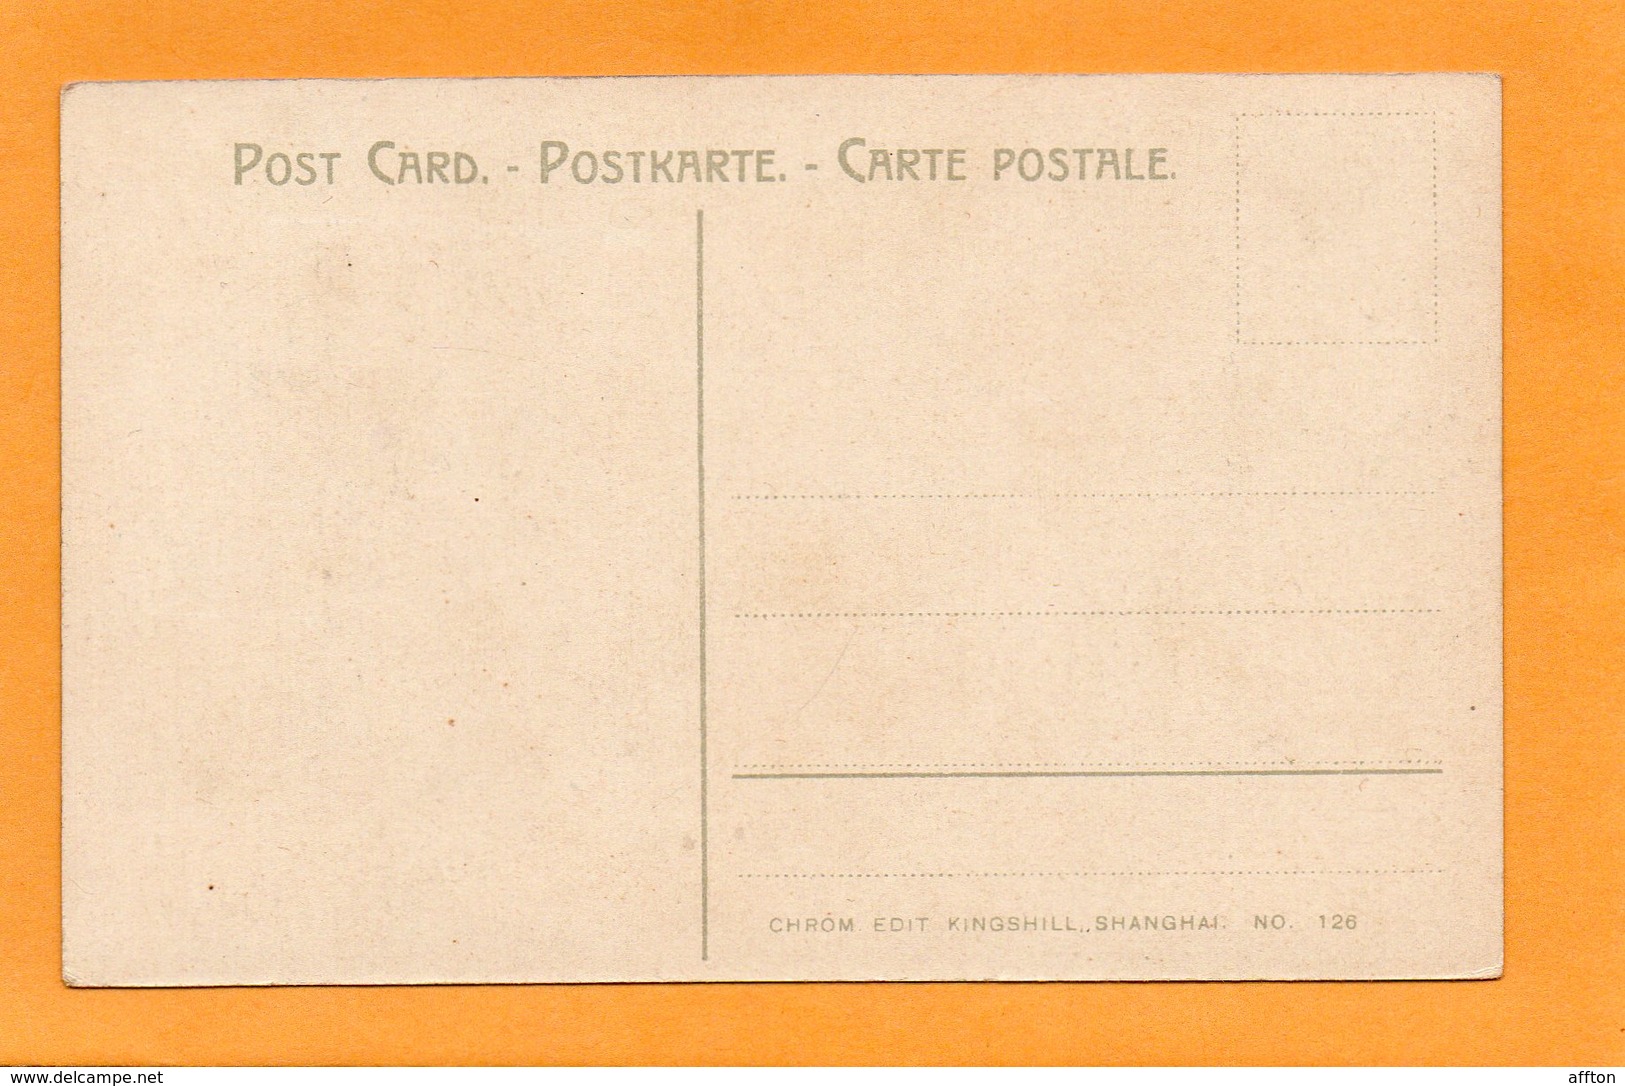 China 1905 Postcard - China